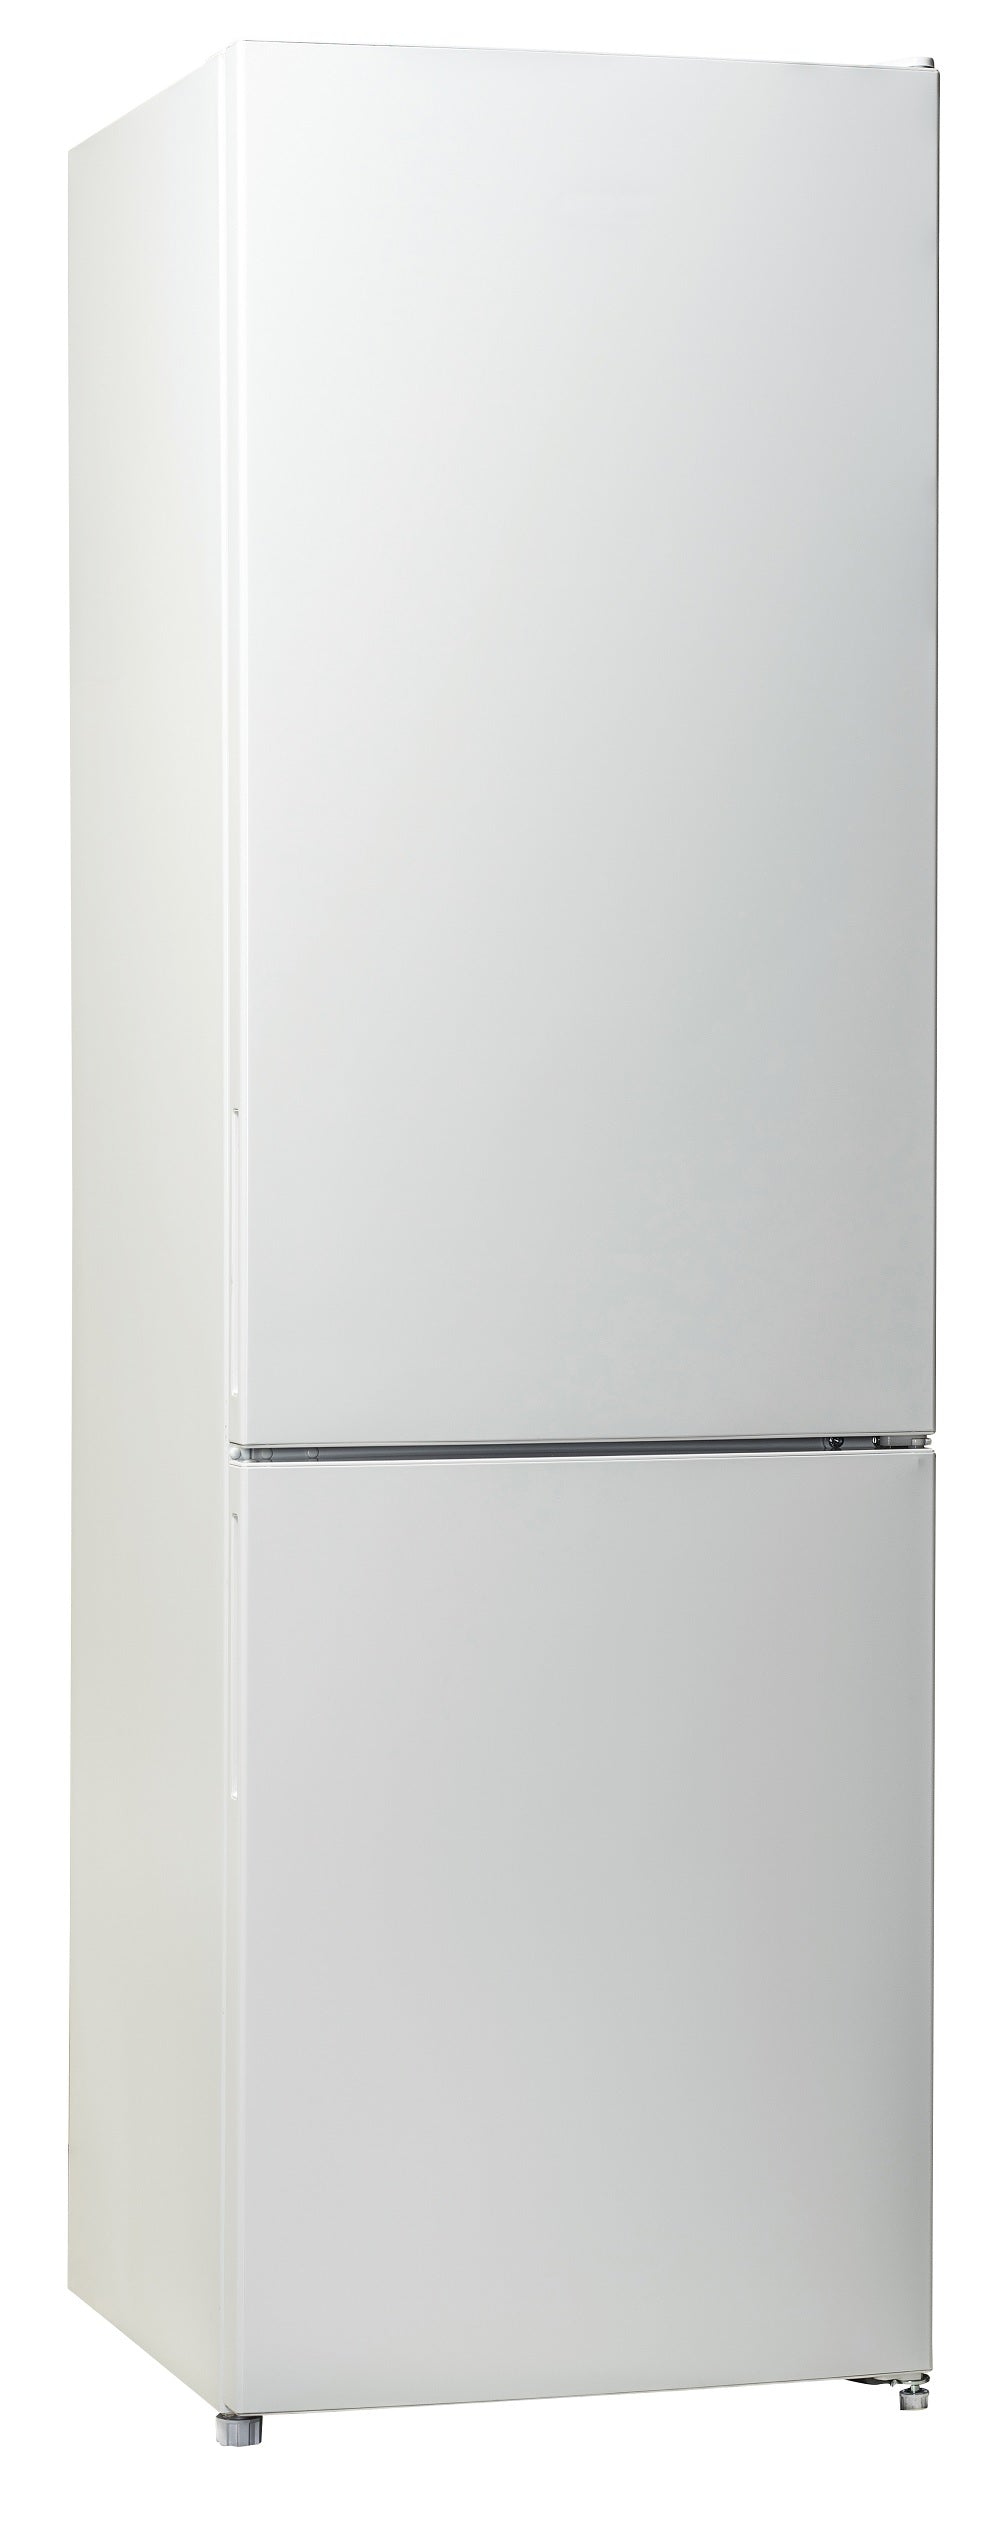 T65564MSF 187/75 Smart Frost Fridge Freezer